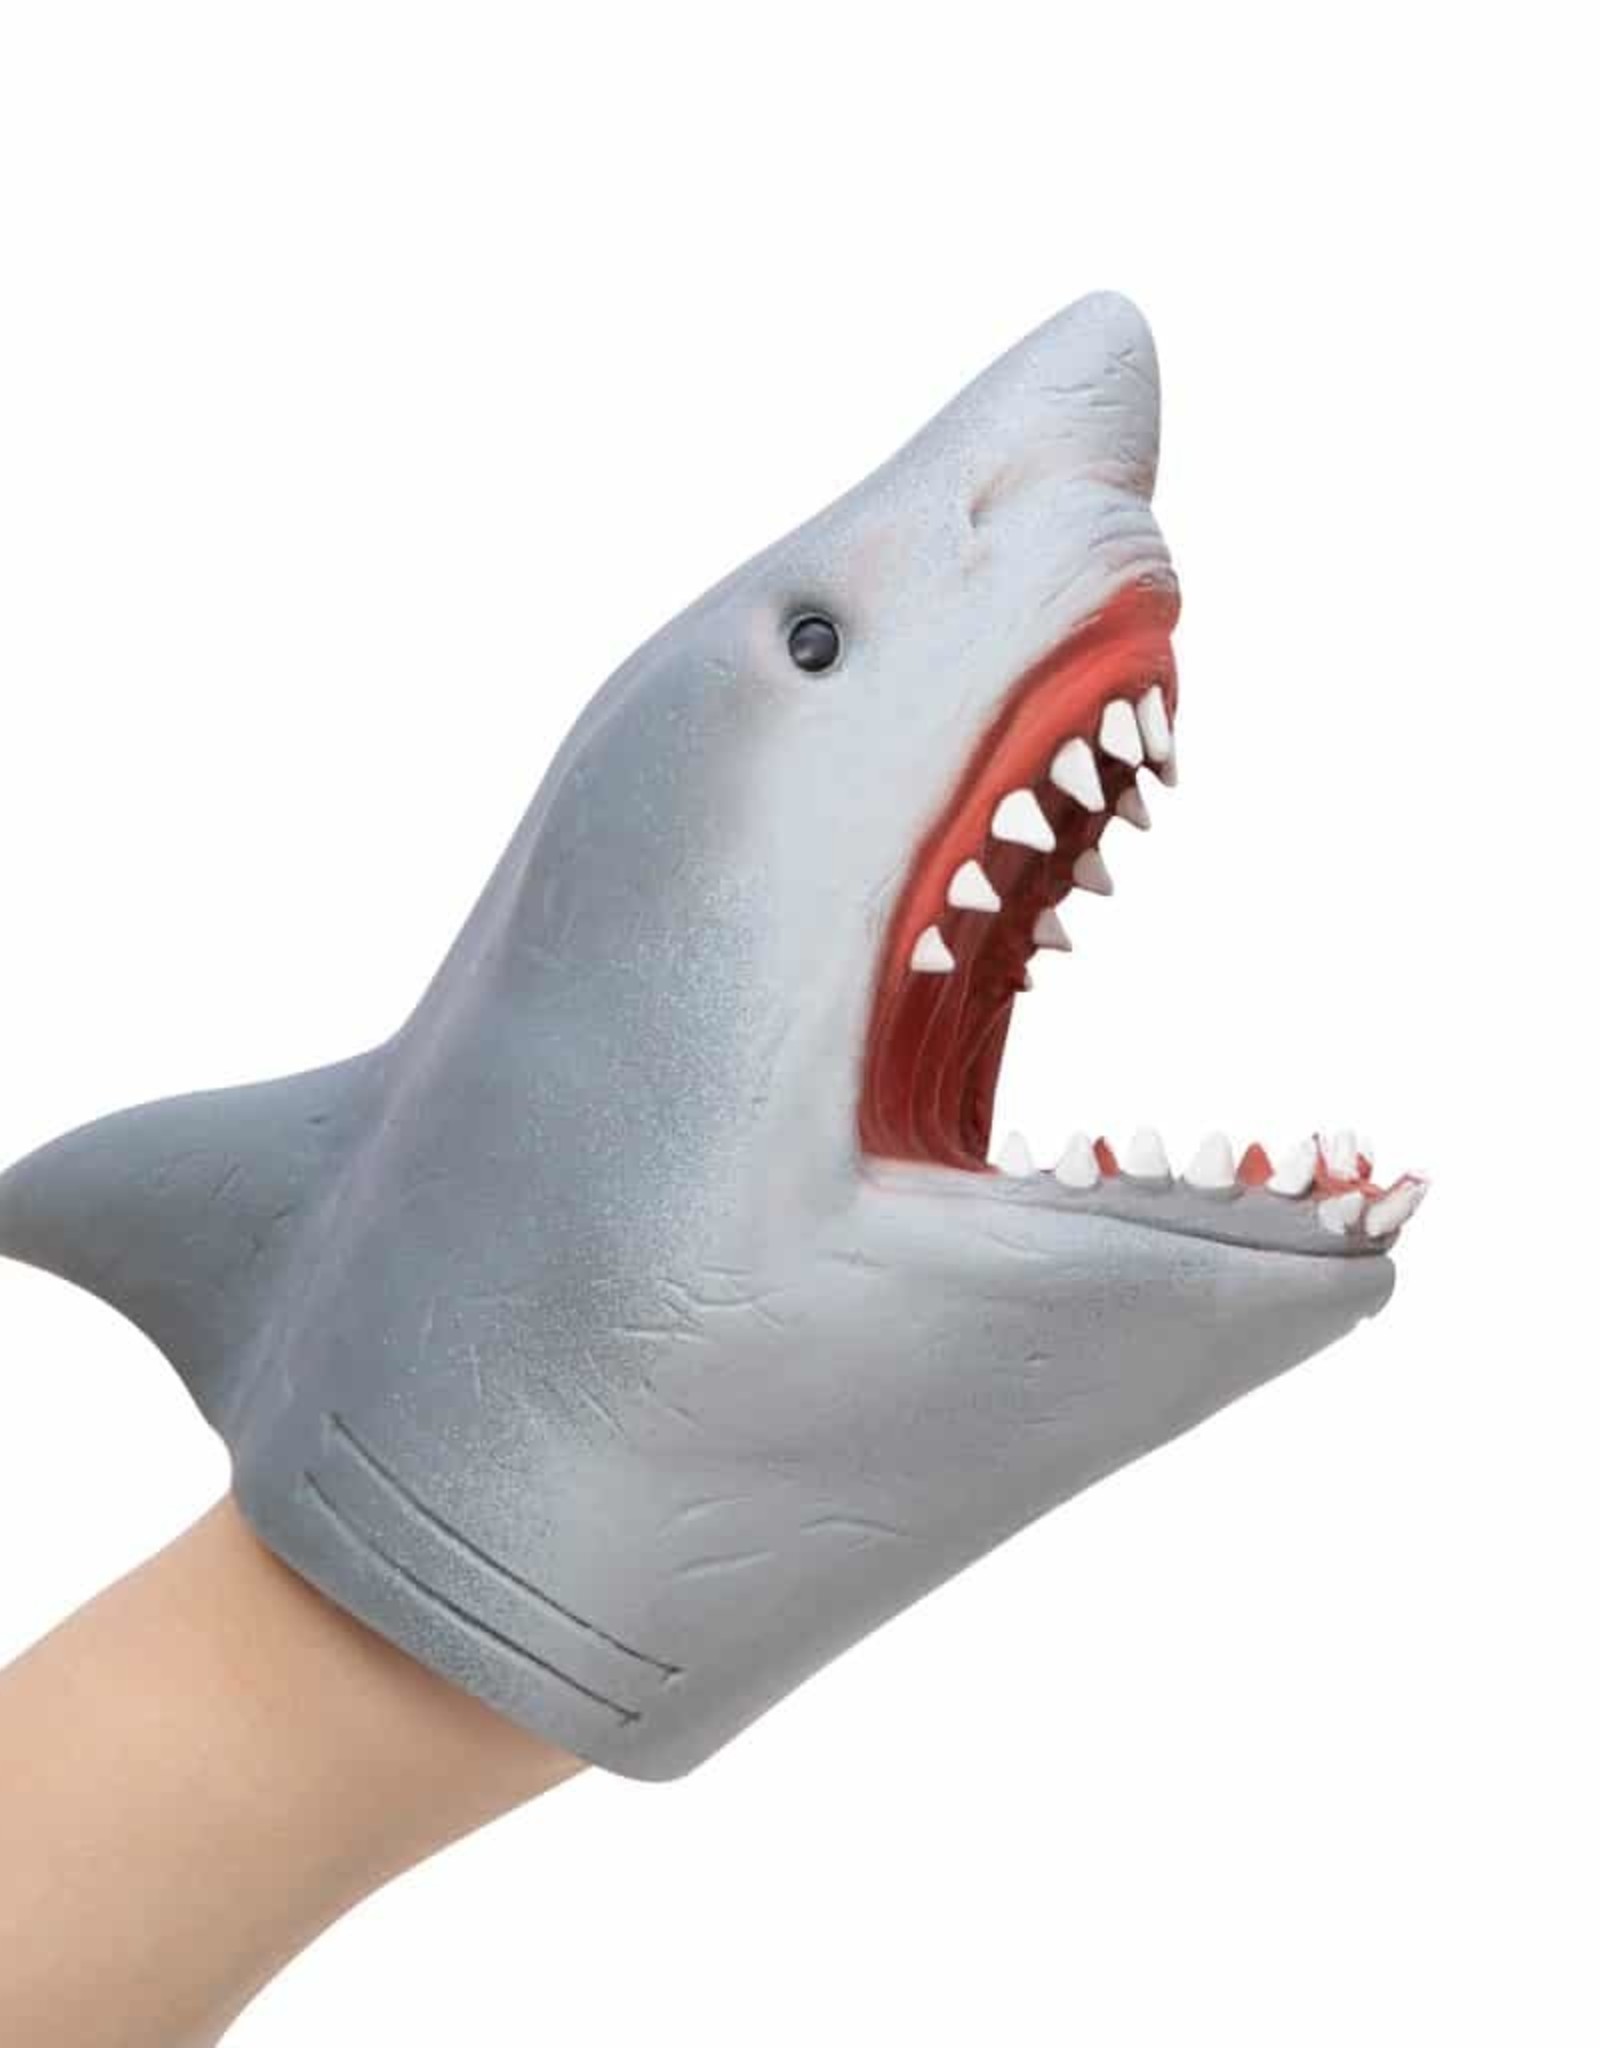 Schylling Shark hand puppet